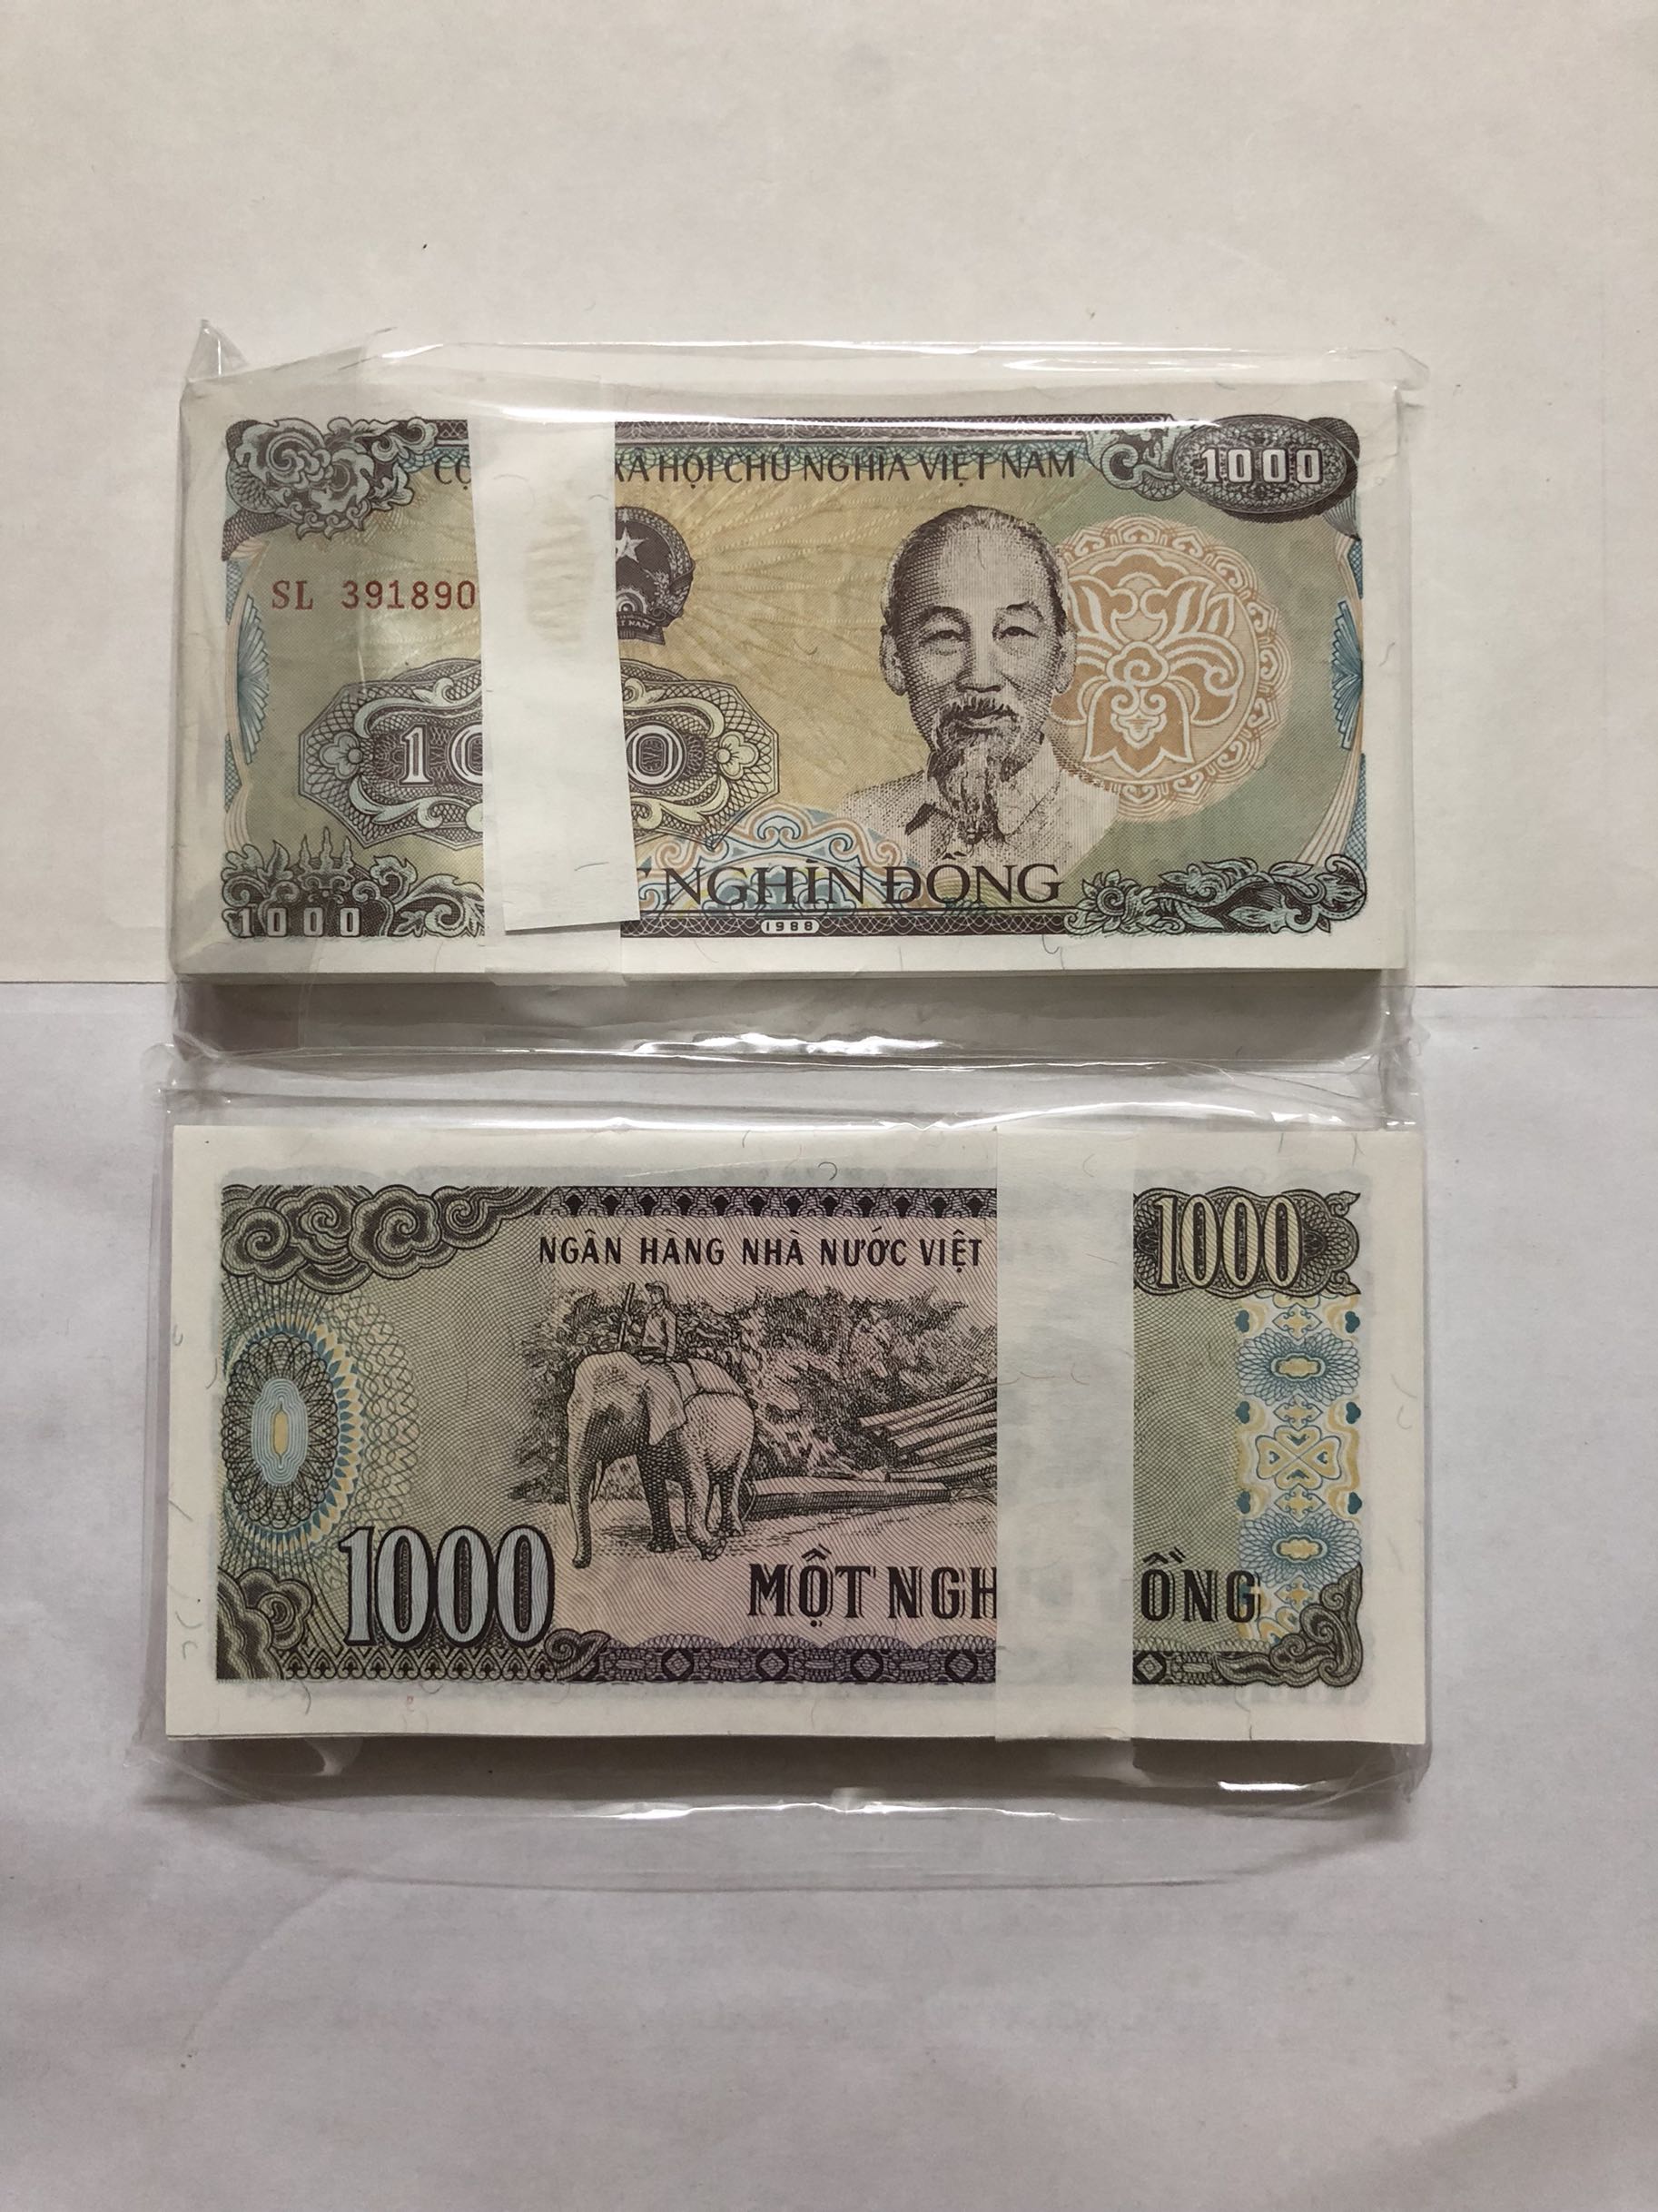 50元越南币图片-图库-五毛网